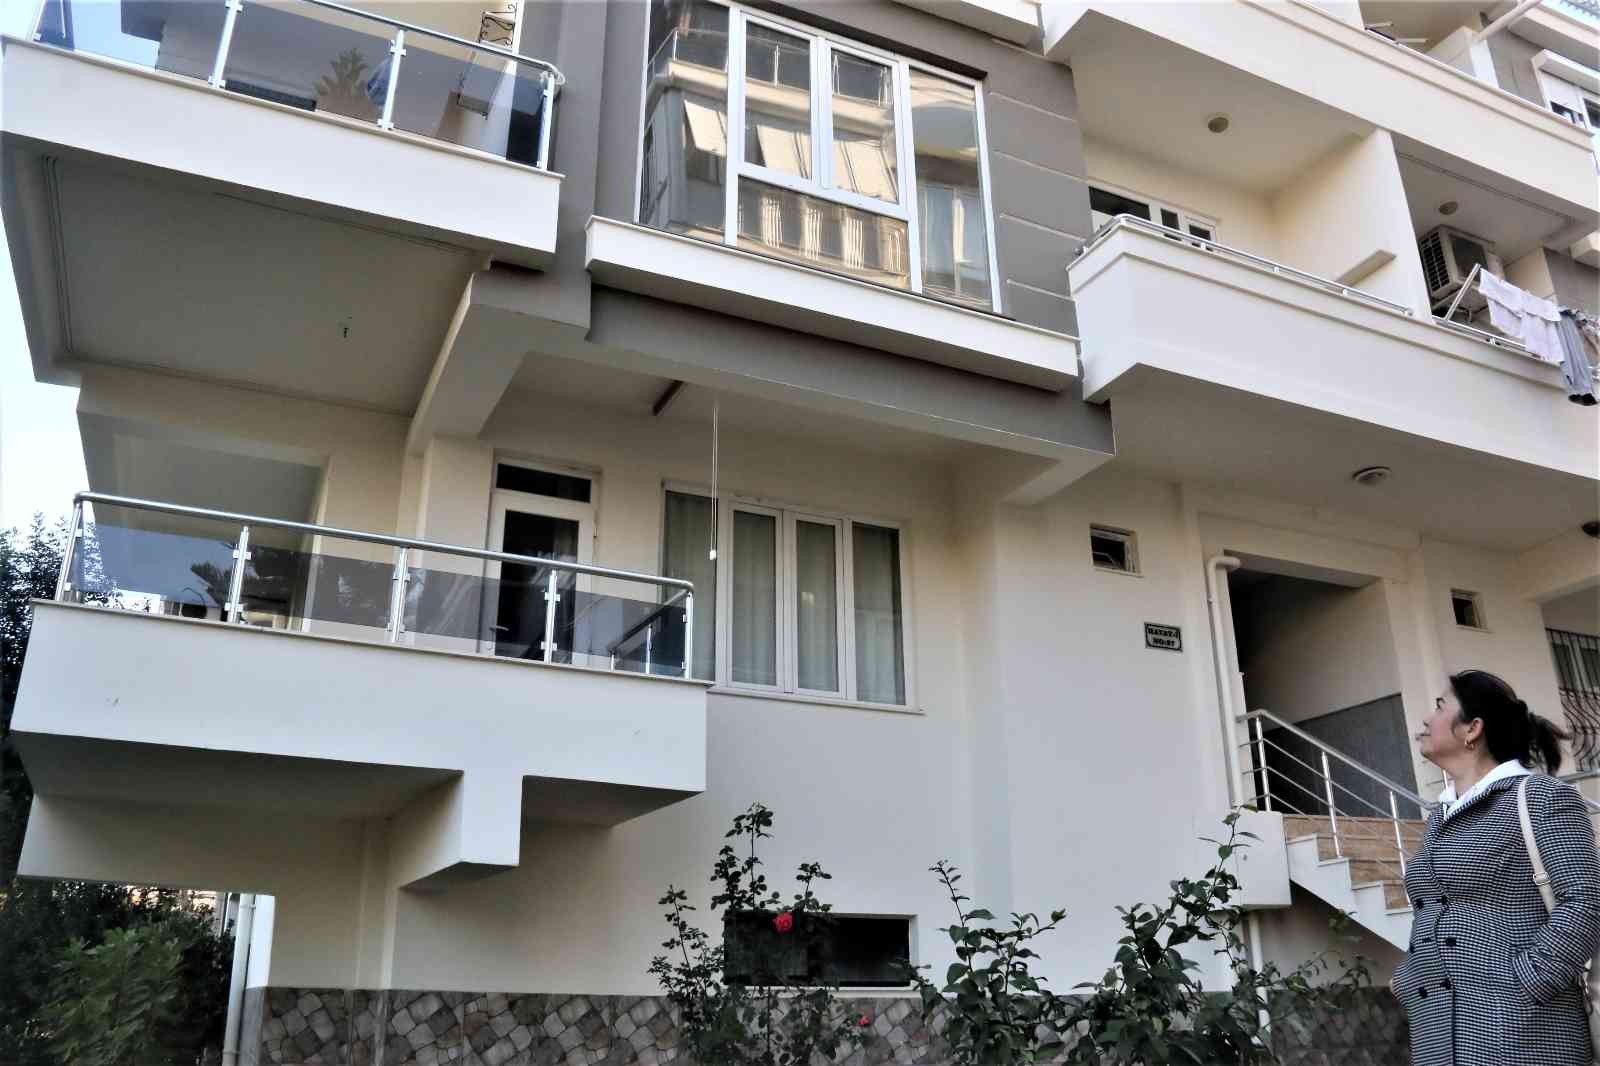 Antalya’da 18 yıllık hemşireye ev sahibi şoku #antalya